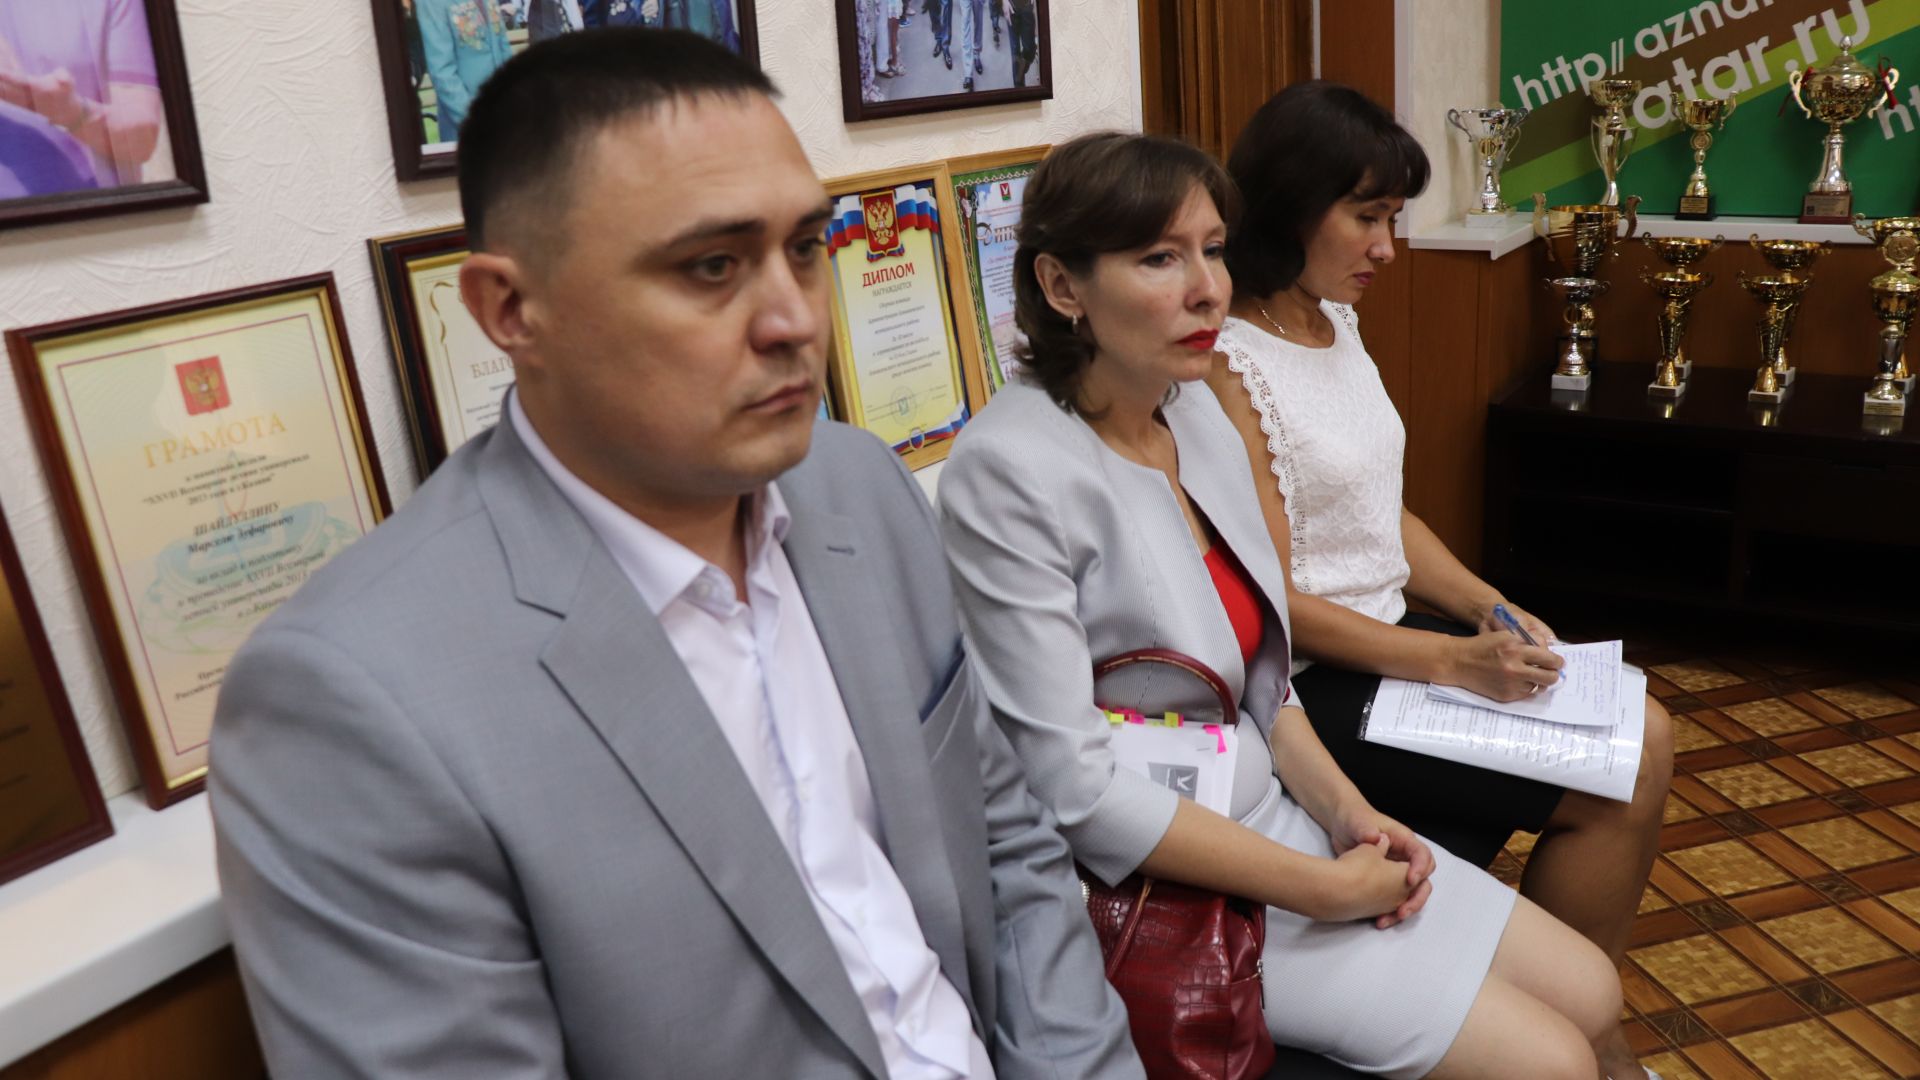 С рабочим визитом Азнакаево посетила Уполномоченный по правам ребенка в Республике Татарстан Гузель Удачина